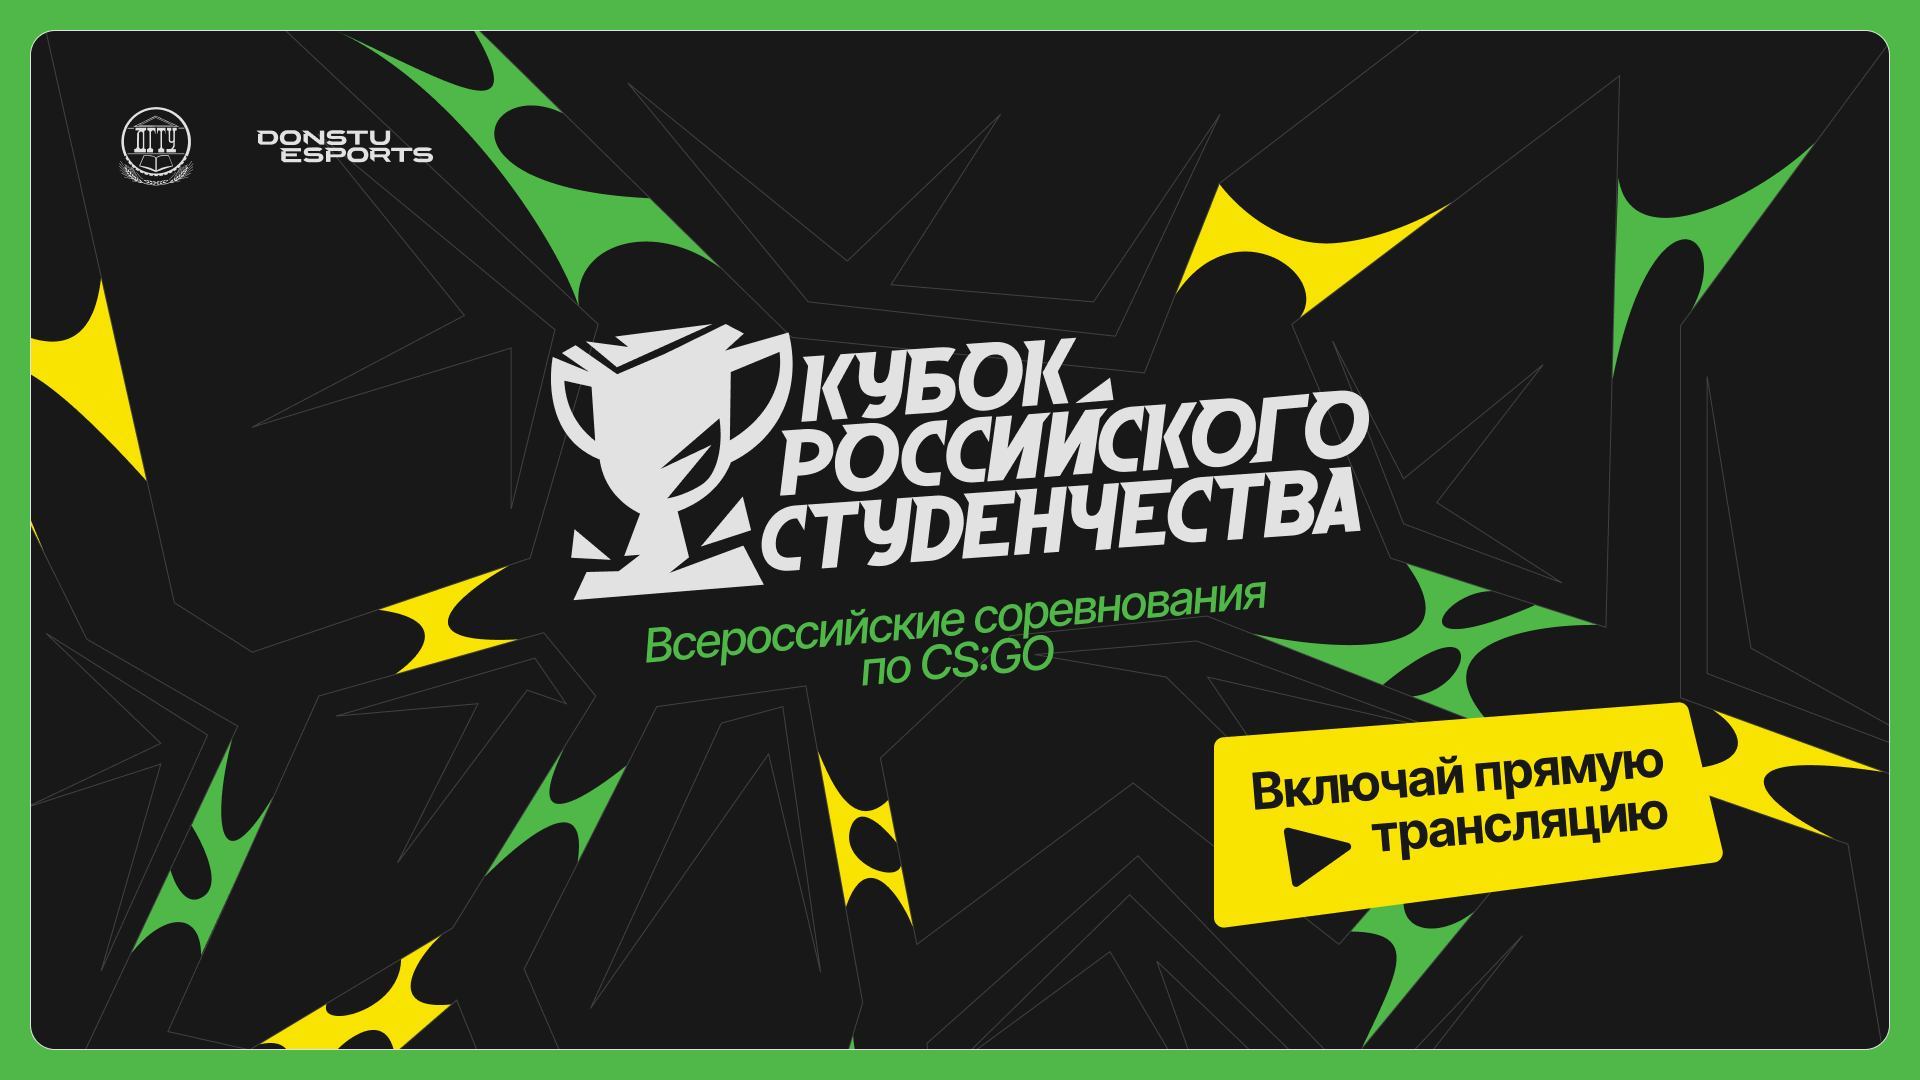 Кубок российского студенчества | УФО | Стрим 1 | Donstu Esports